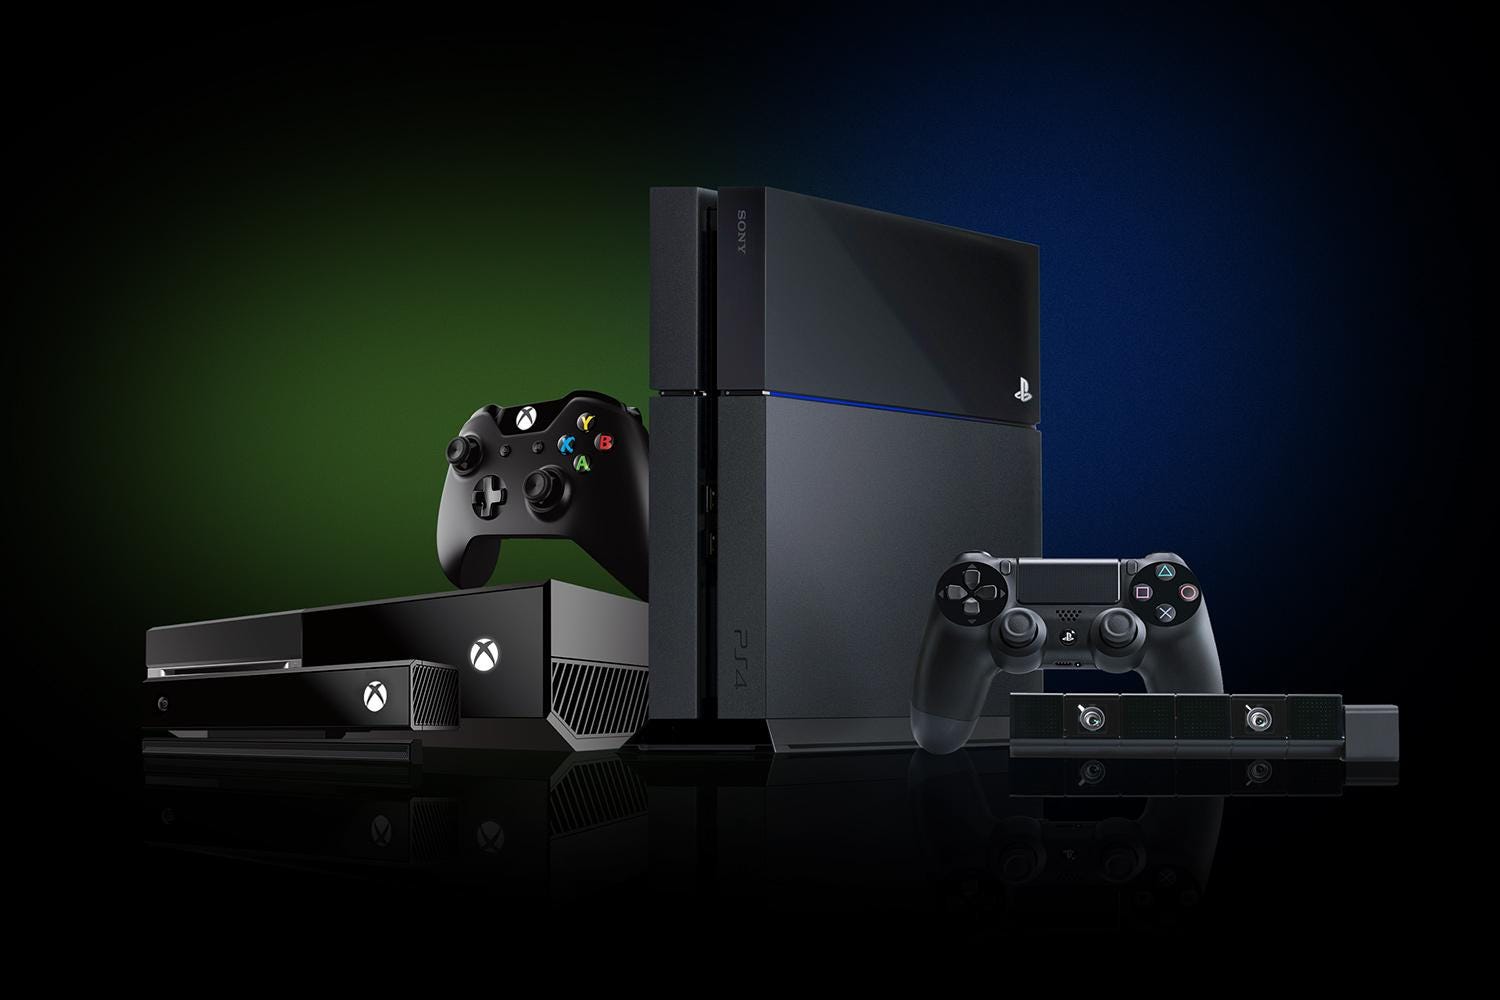 Ubisoft libera Jogo de Graça por 10 dias para PC, PlayStation e Xbox!